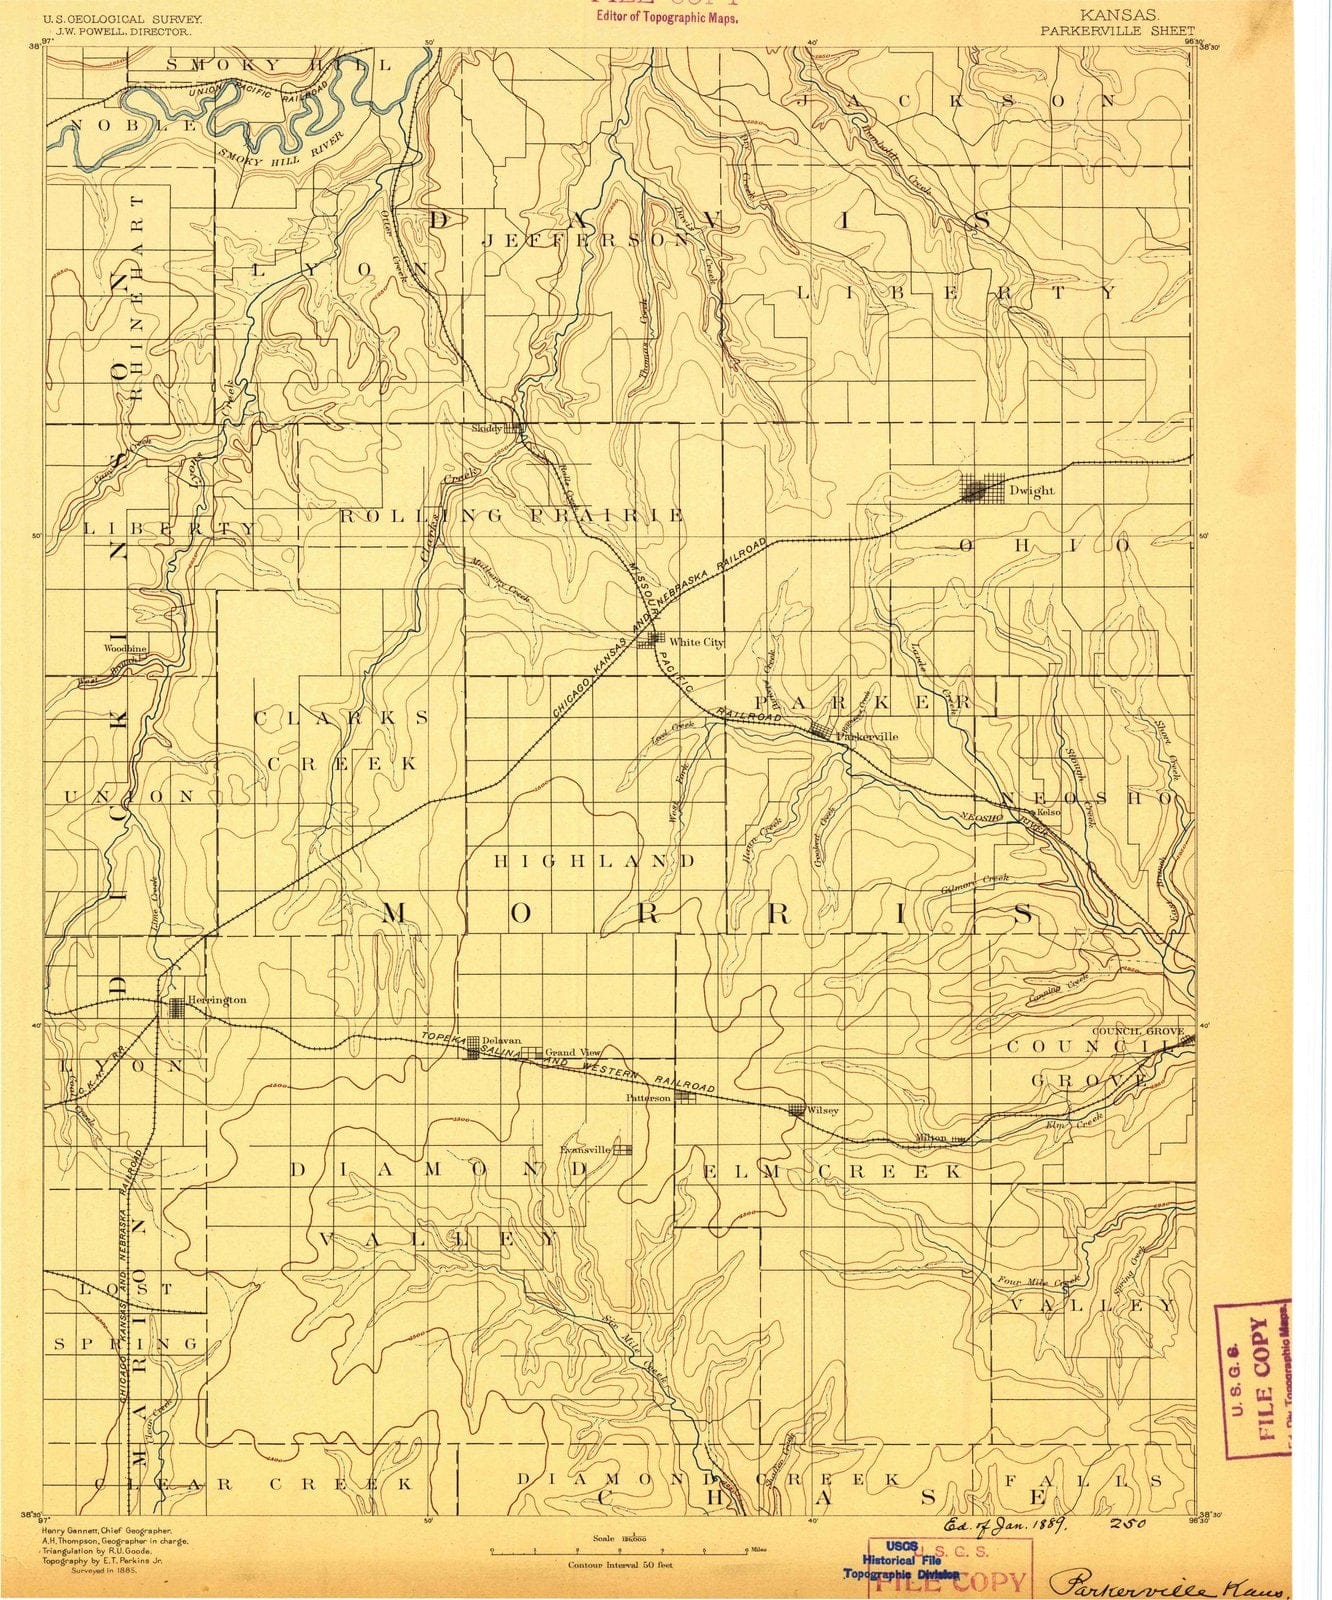 1889 Parkerville, KS - Kansas - USGS Topographic Map